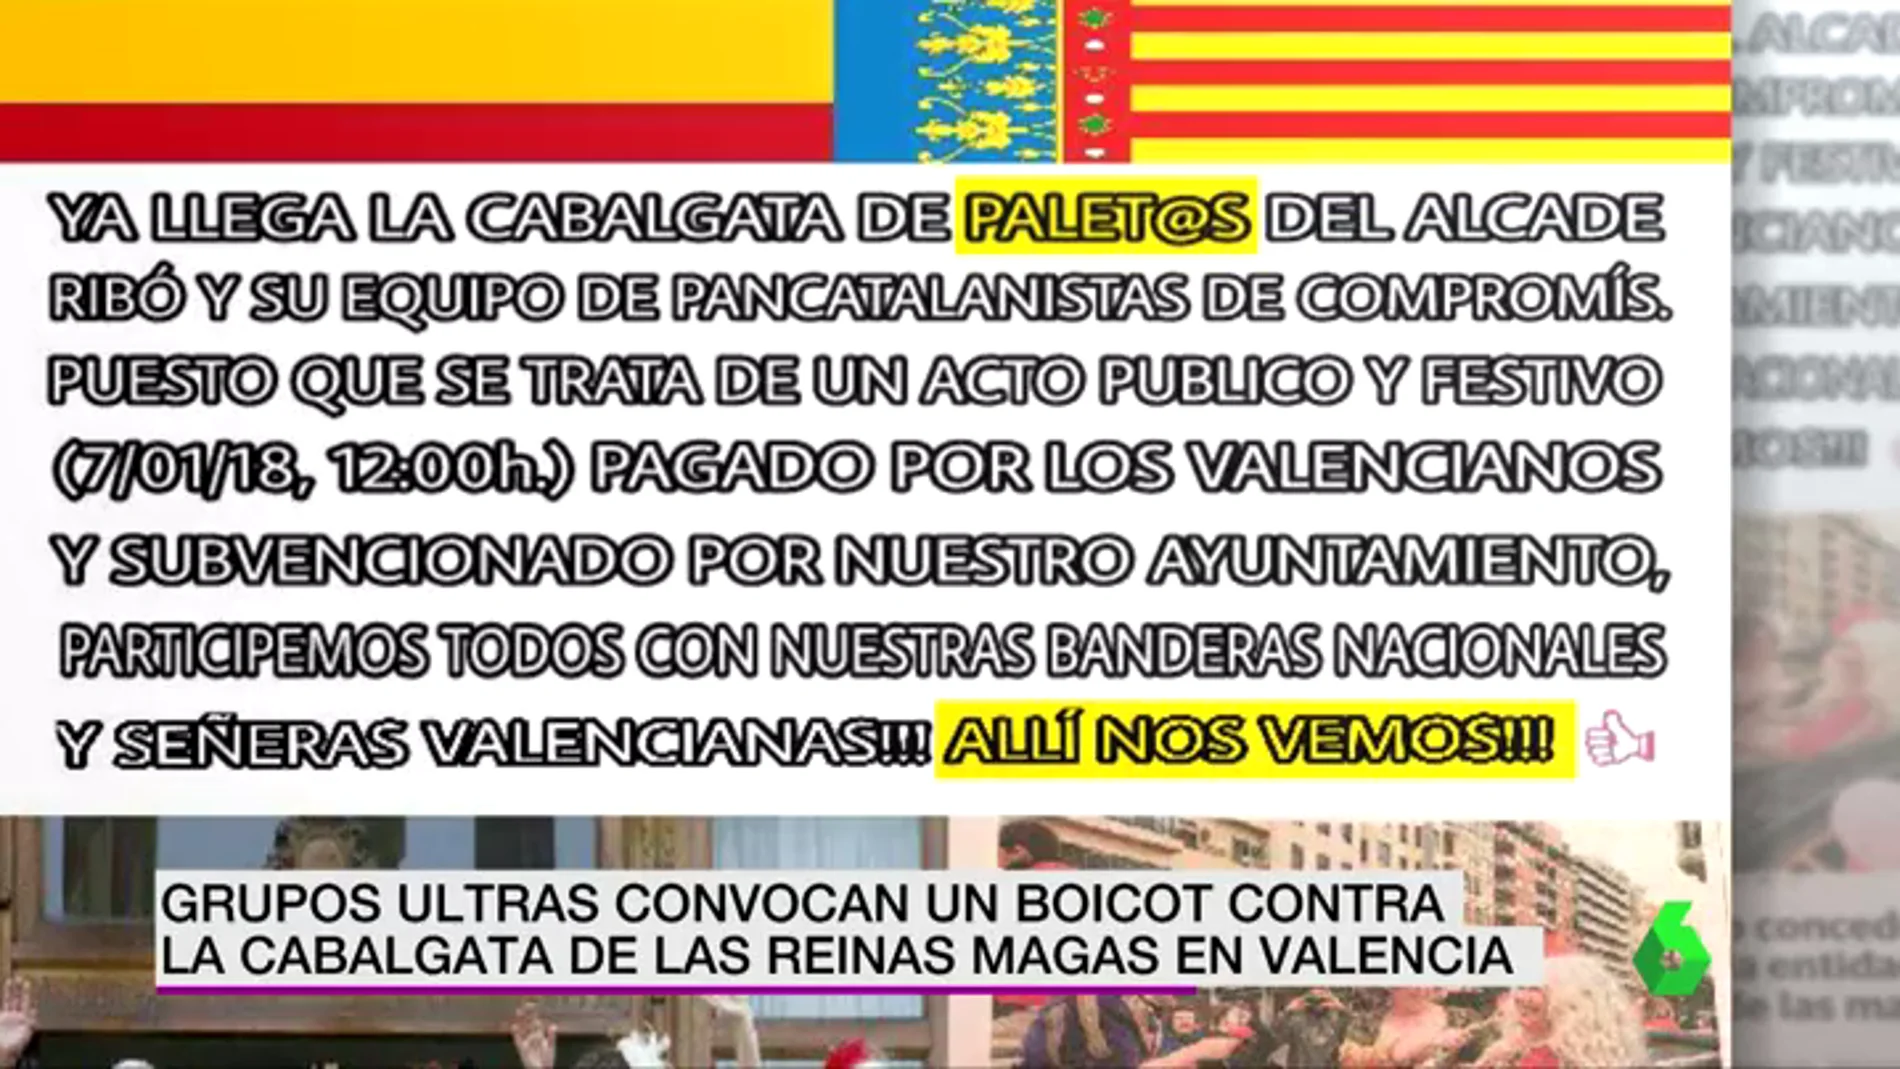 El mensaje que han publicado los ultras para hacer un boicot a la Cabalgata de Reinas Magas en Valencia